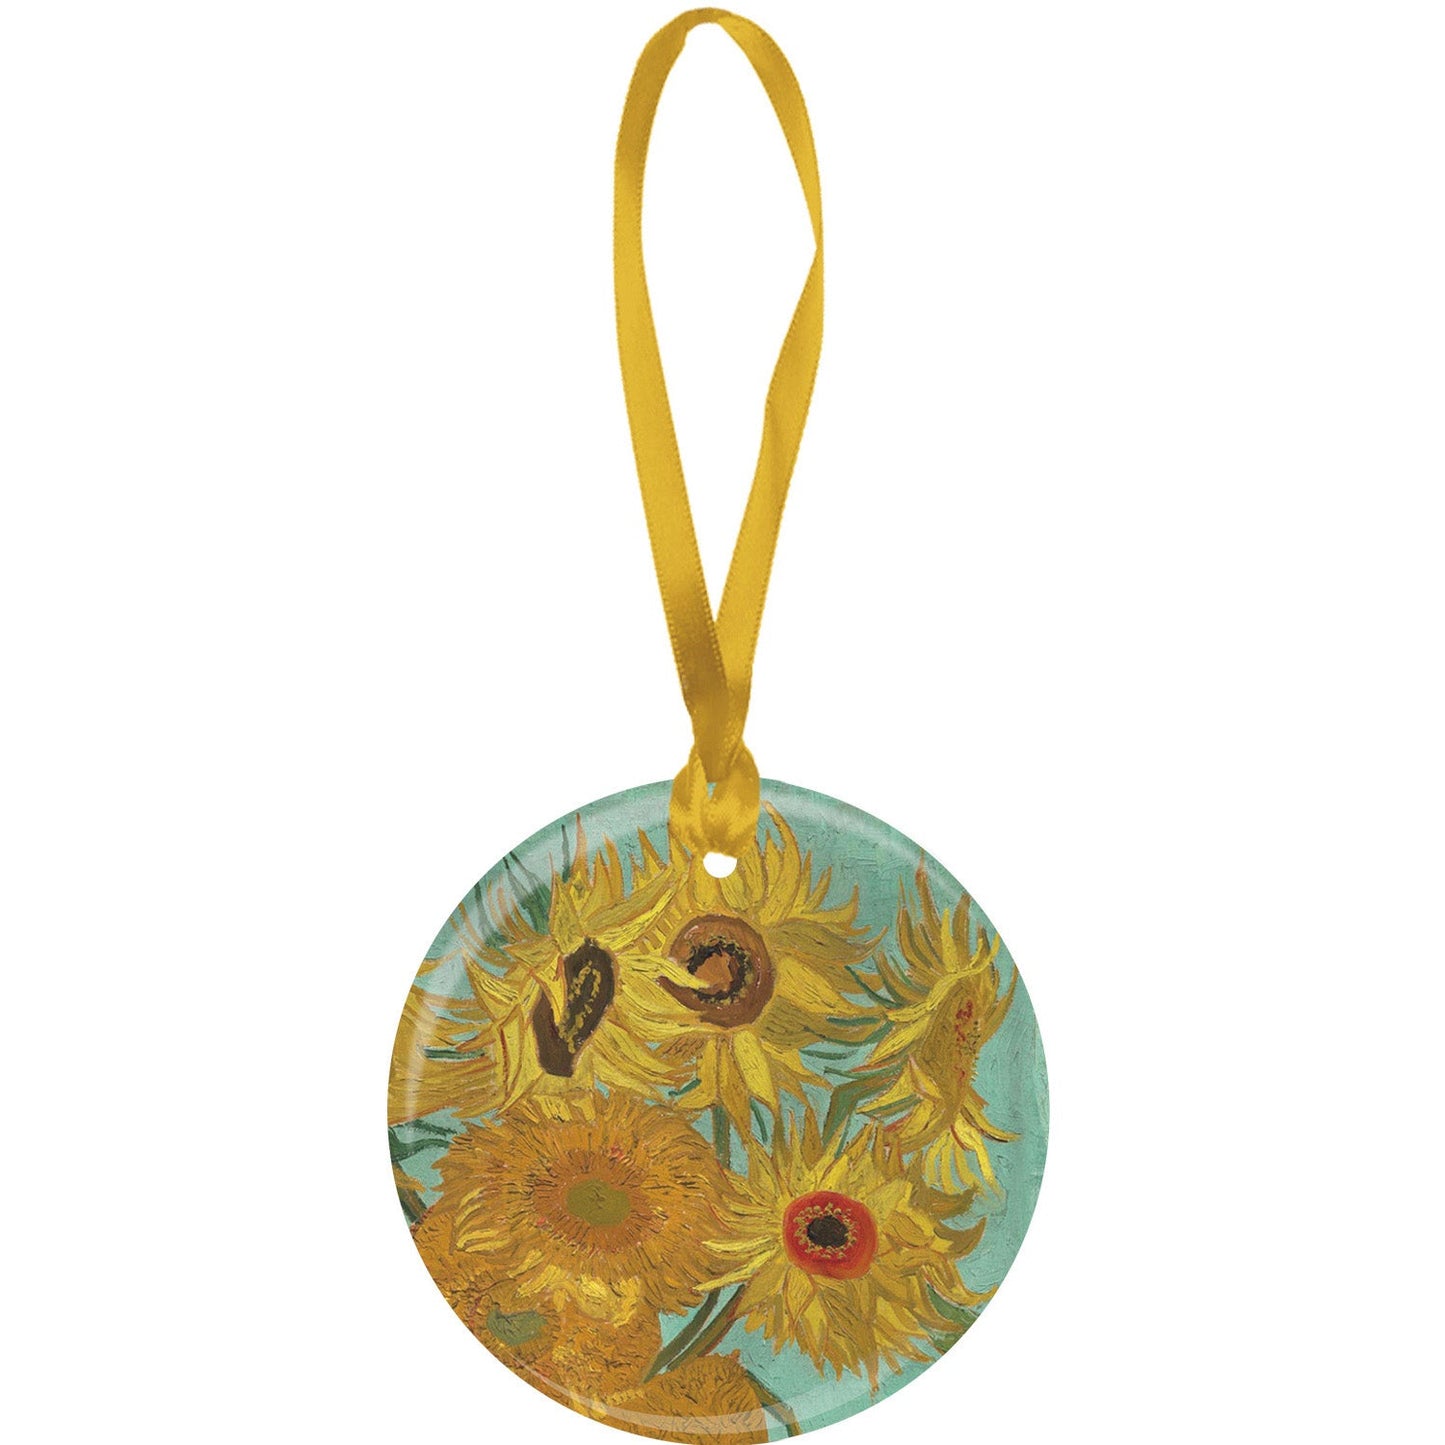 Van Gogh's "Sunflowers" Porcelain Ornament